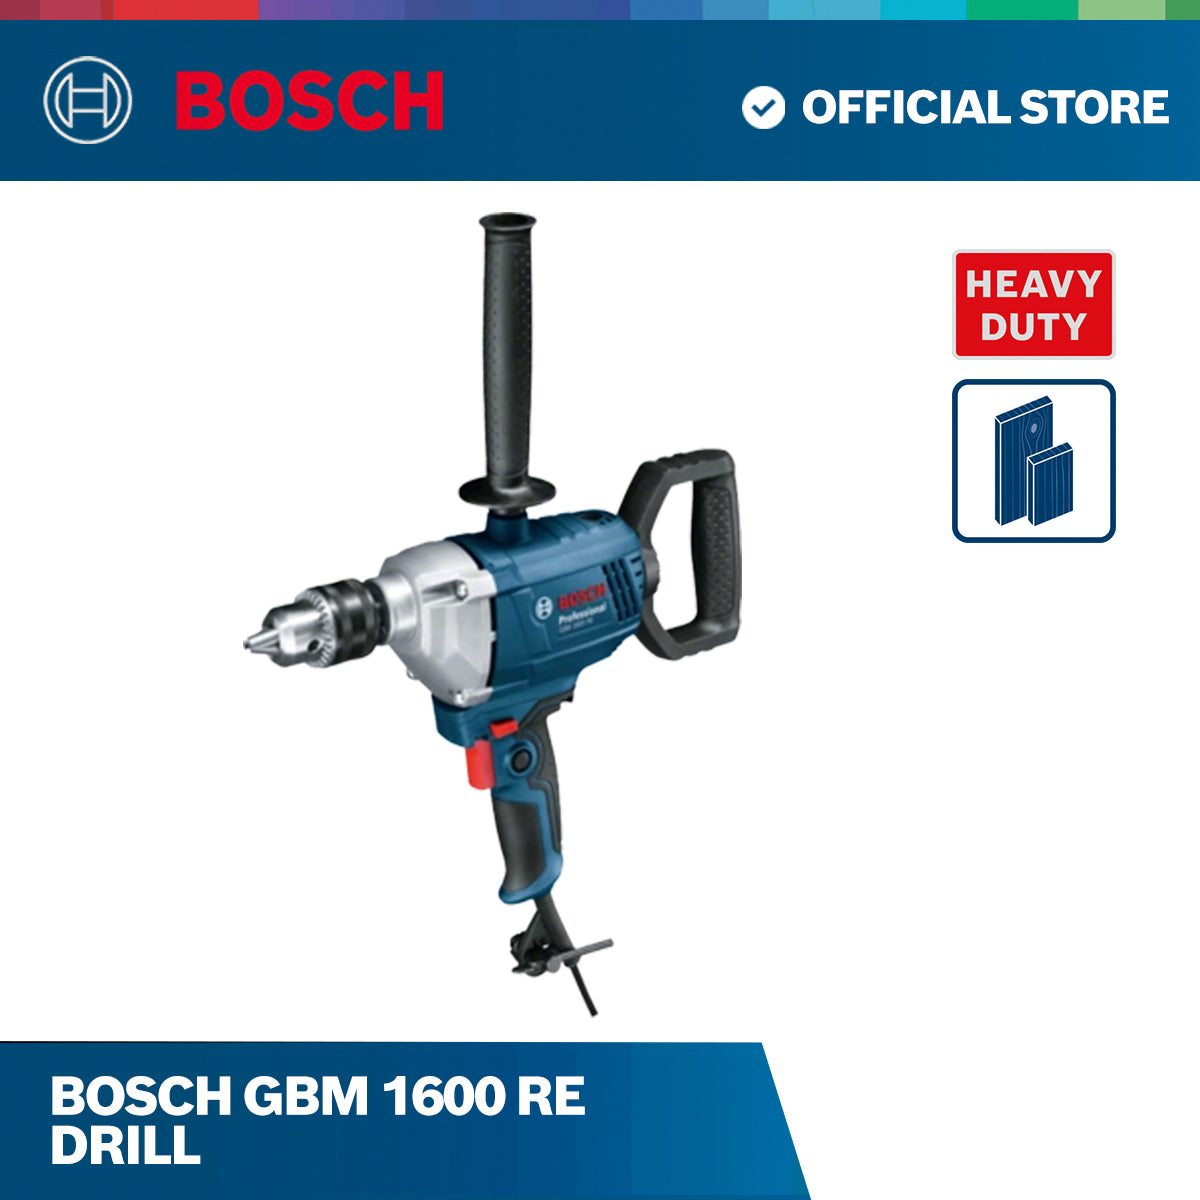 Taladro profesional 850 W GBM 1600 RE Bosch